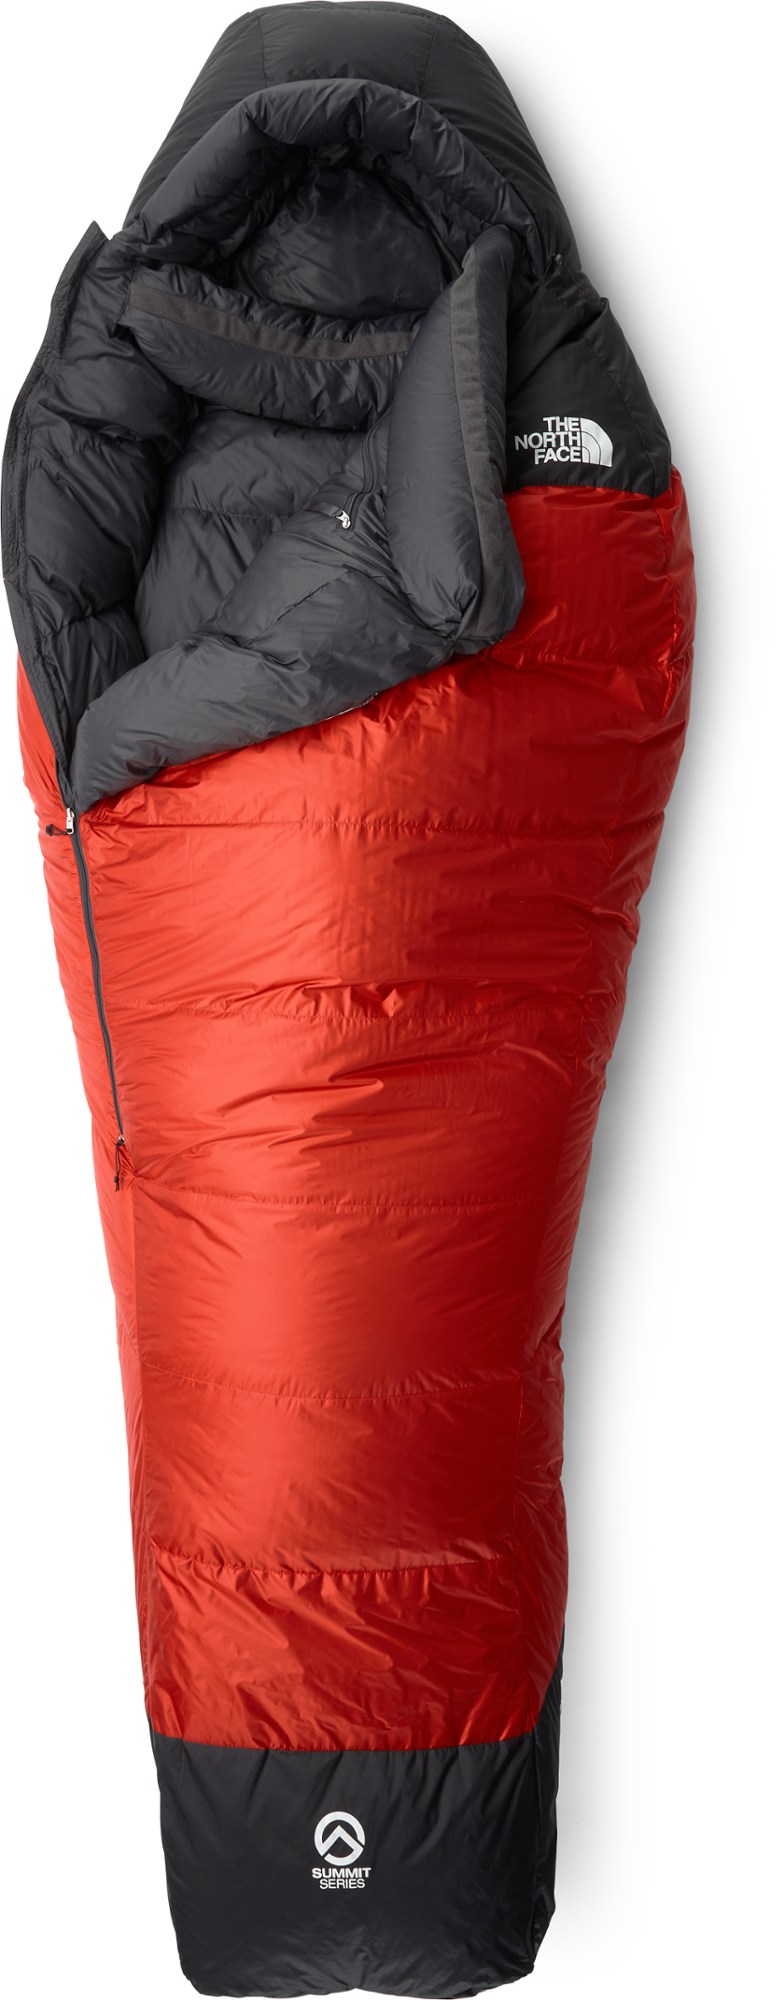 Спальный мешок Инферно-20 The North Face, красный